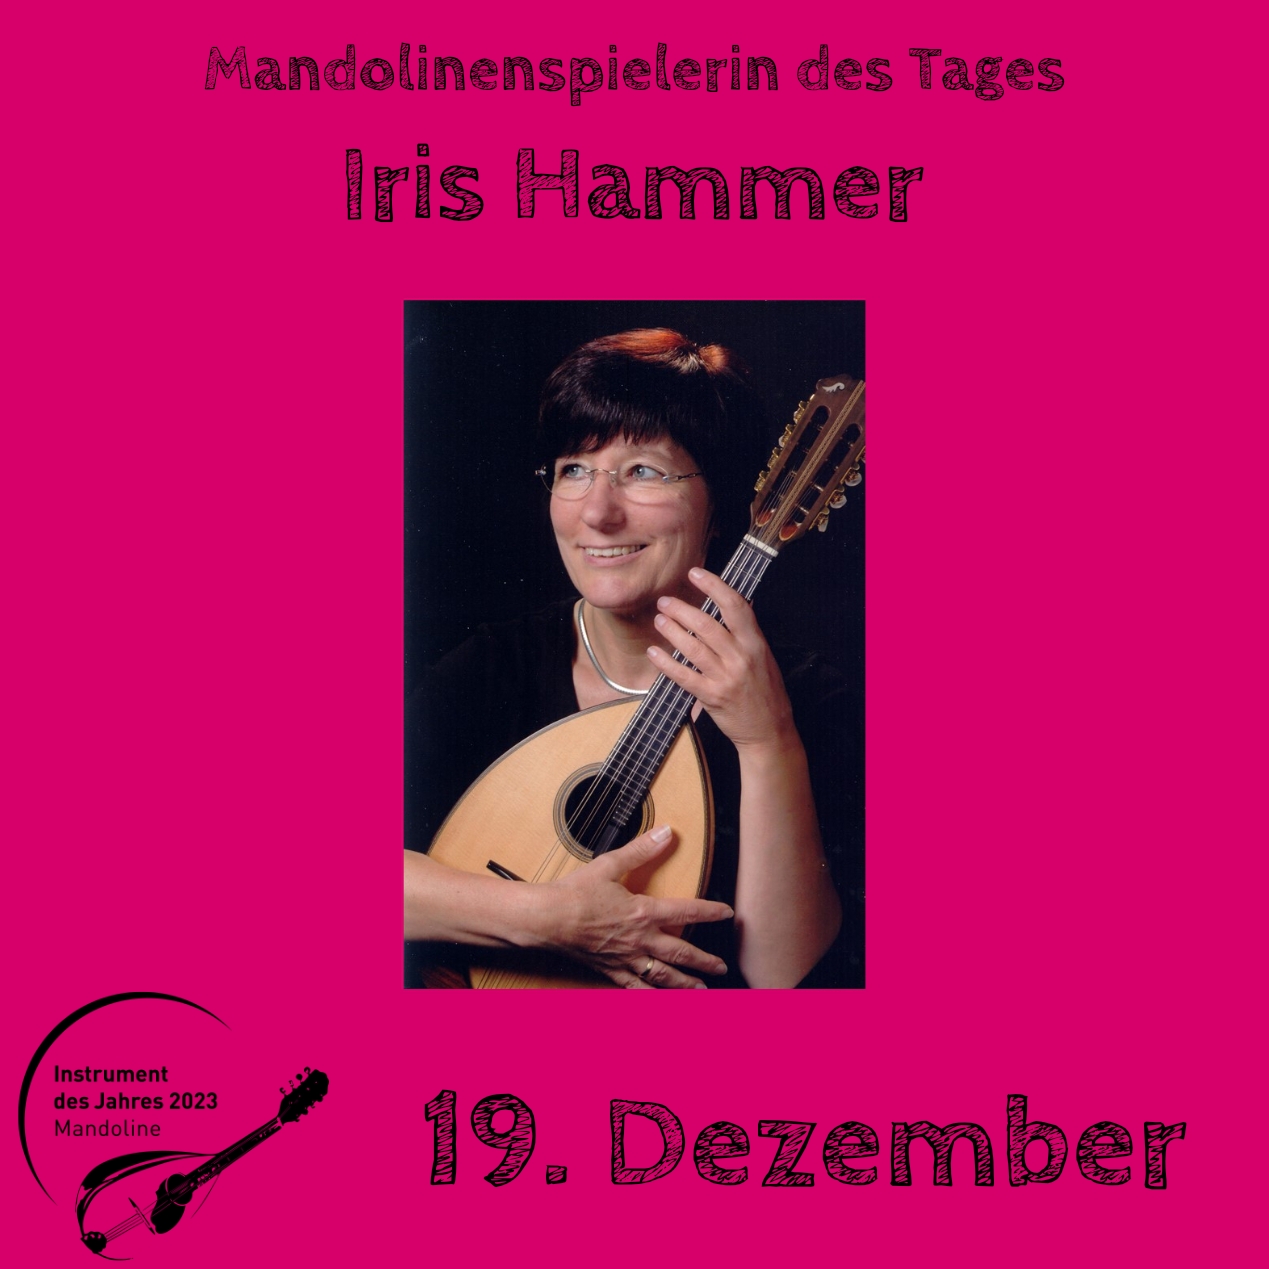 19. Dezember - Iris Hammer Instrument des Jahres 2023 Mandolinenspieler Mandolinenspielerin des Tages